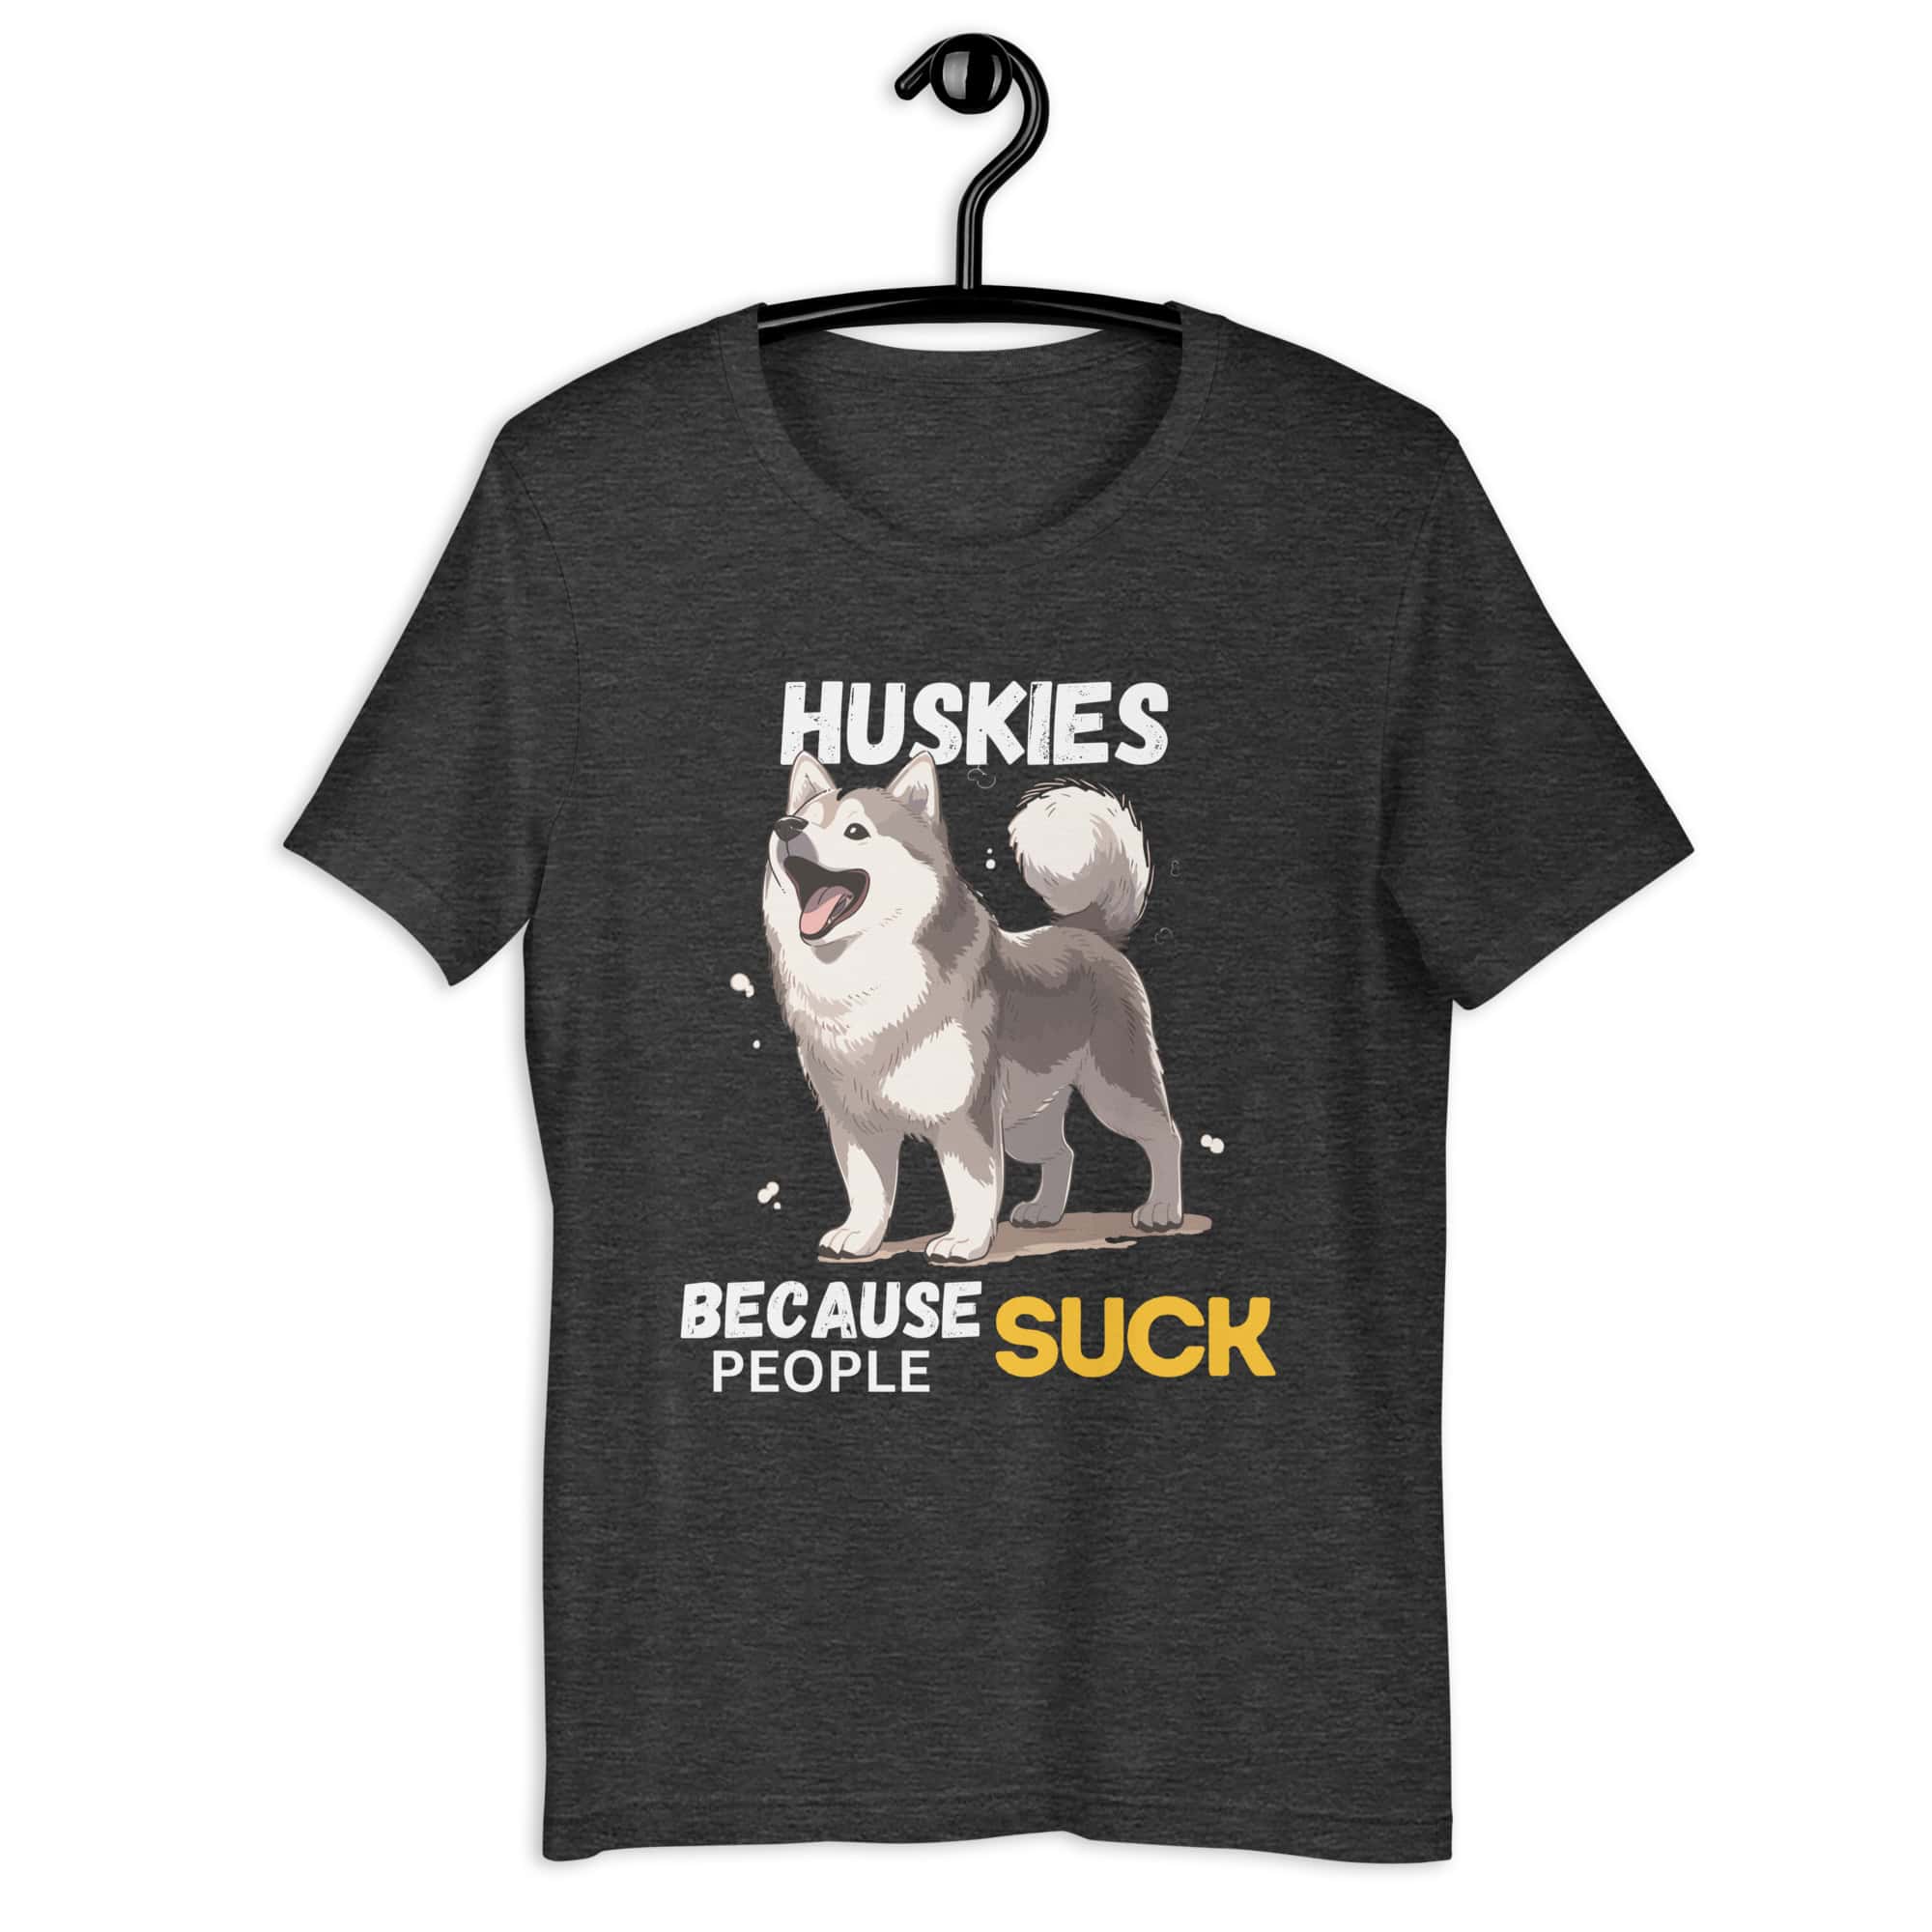 Huskies Because People Suck Unisex T-Shirt matte black